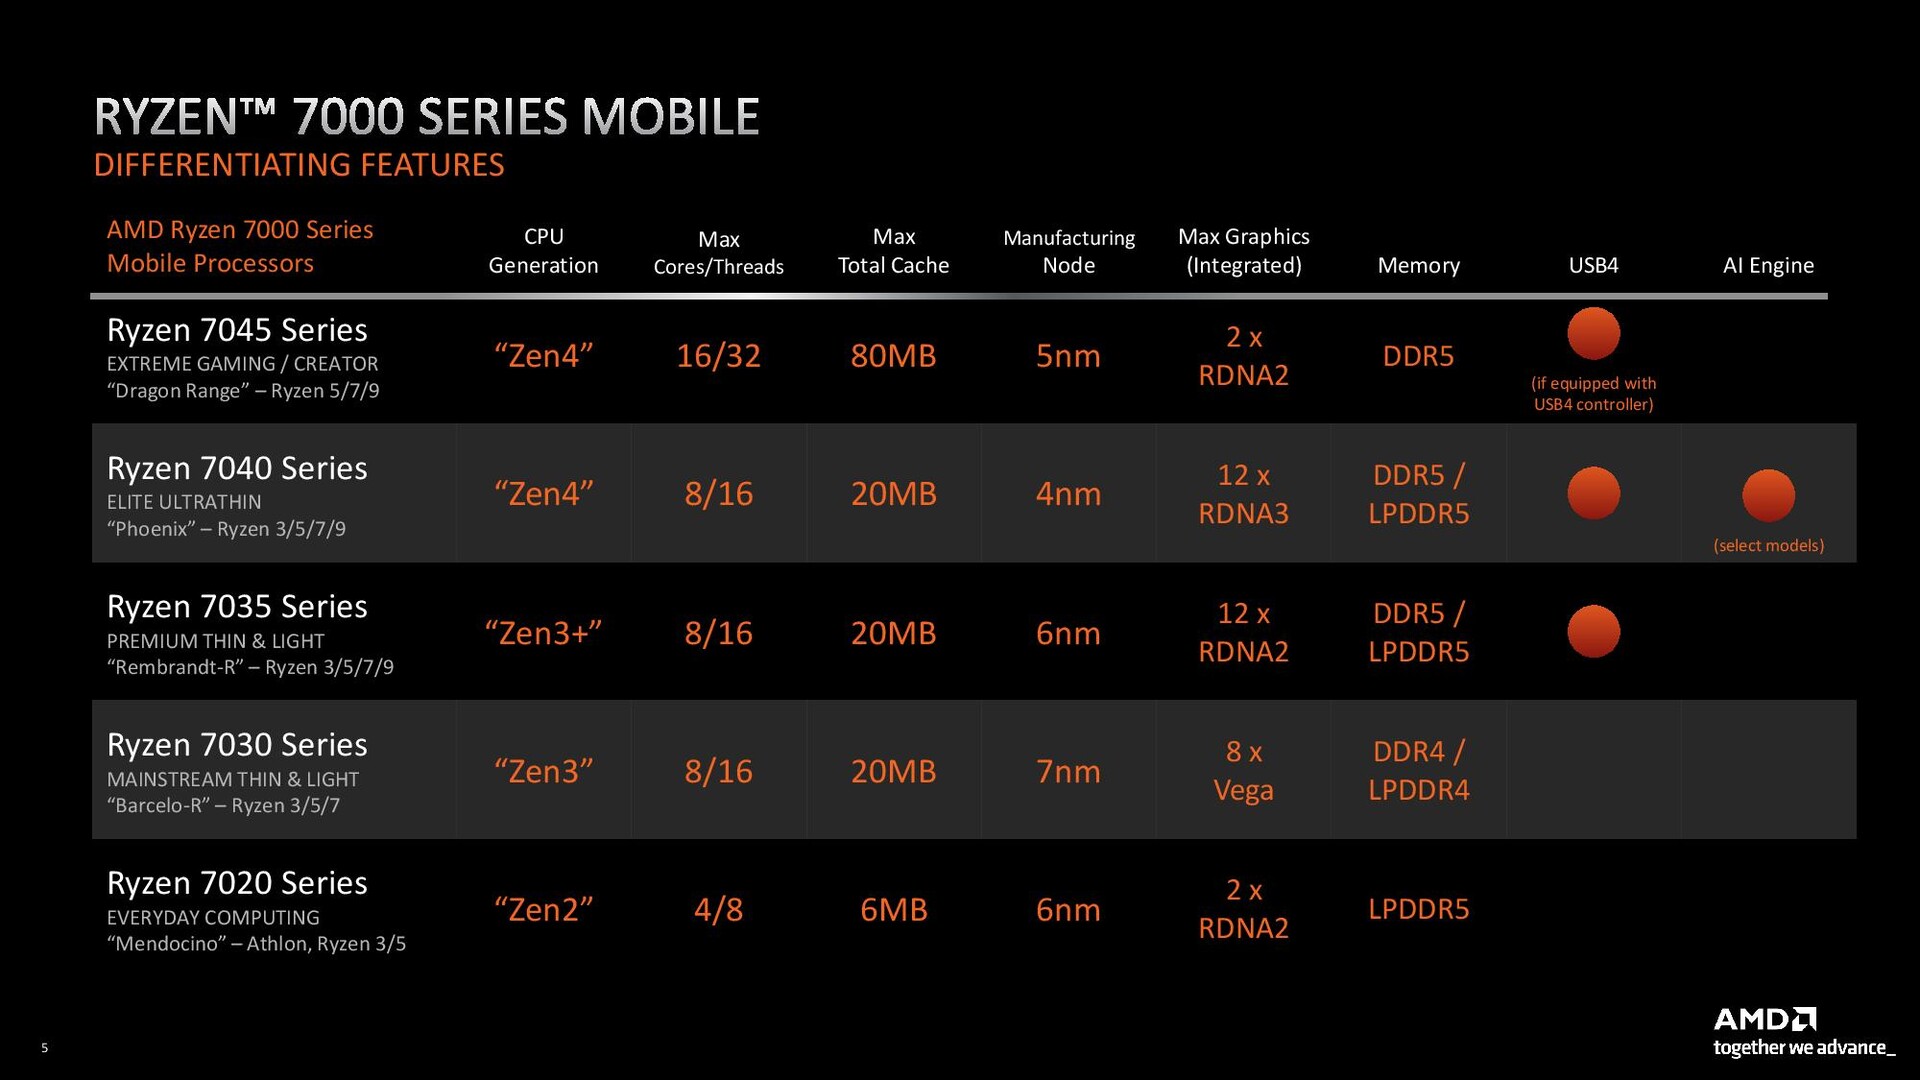 Sự khác biệt trên các dòng sản phẩm thuộc AMD Ryzen 7000 Series Mobile